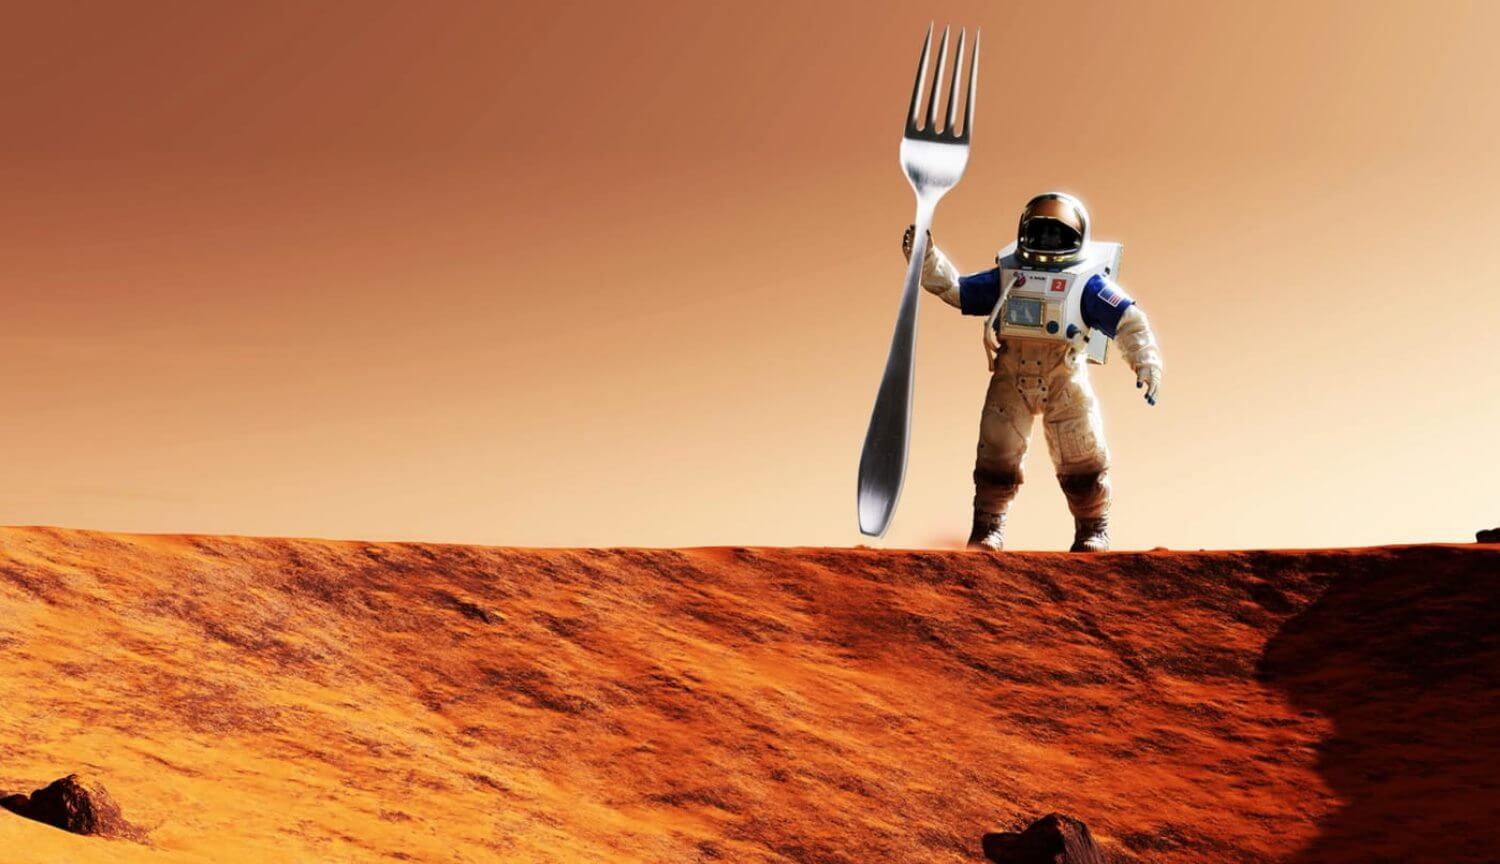 Che devo bere e mangiare per sopravvivere su Marte?